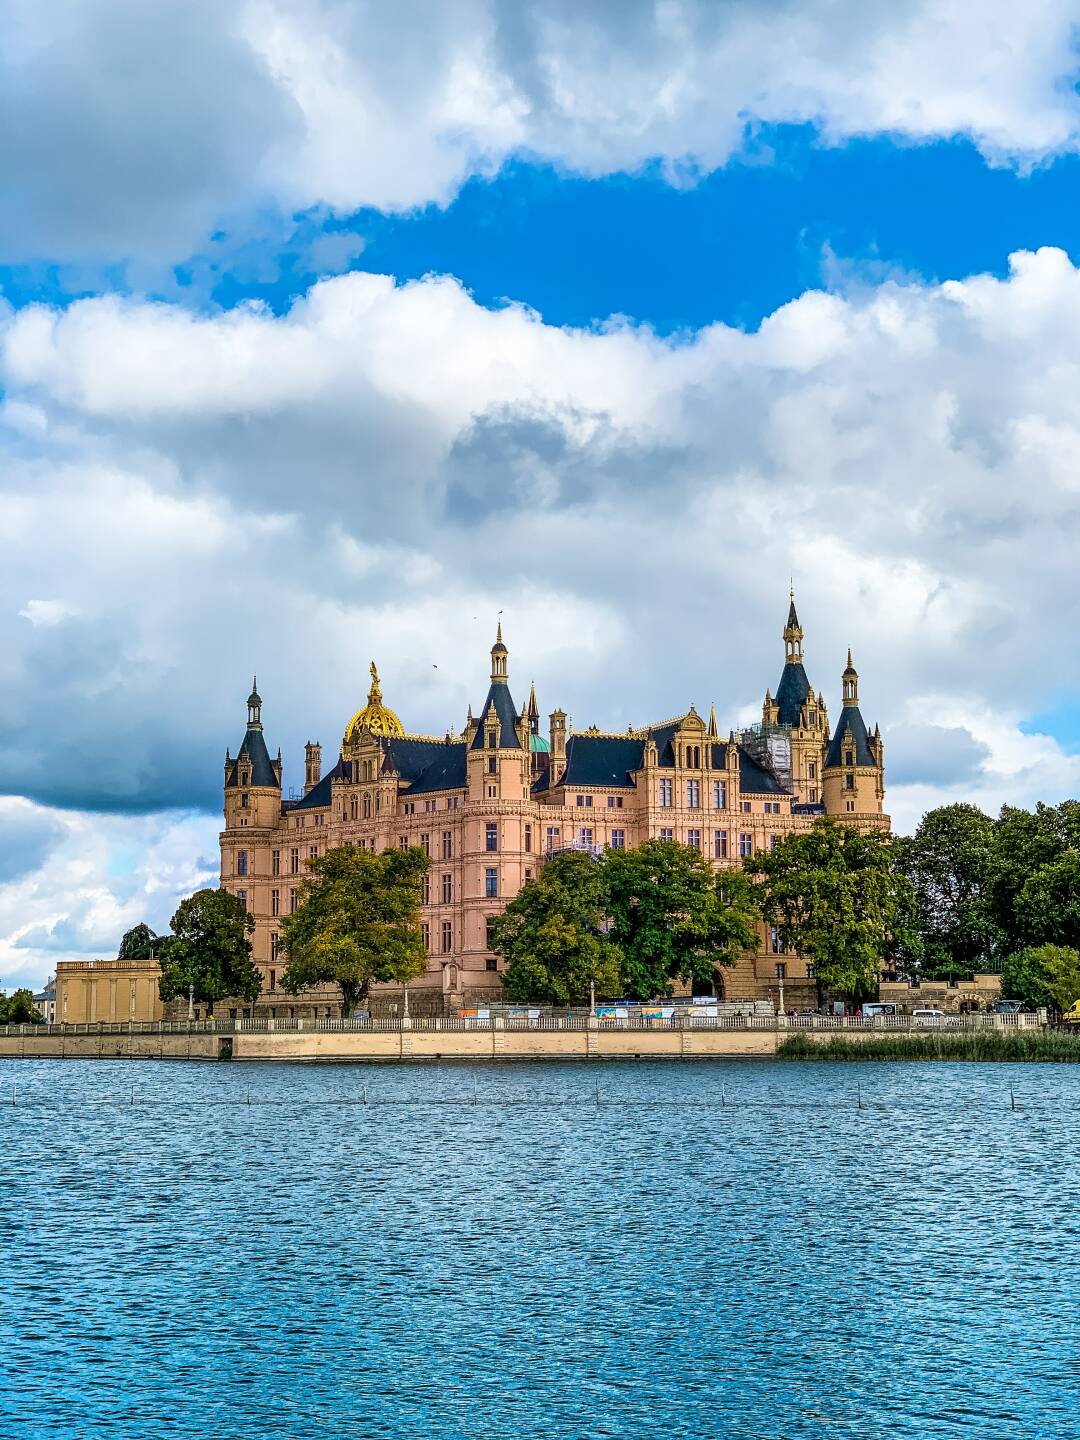 Das Schweriner Schloss, steht seit 1000 Jahren stolz auf seiner kleinen Insel im Schweriner See.